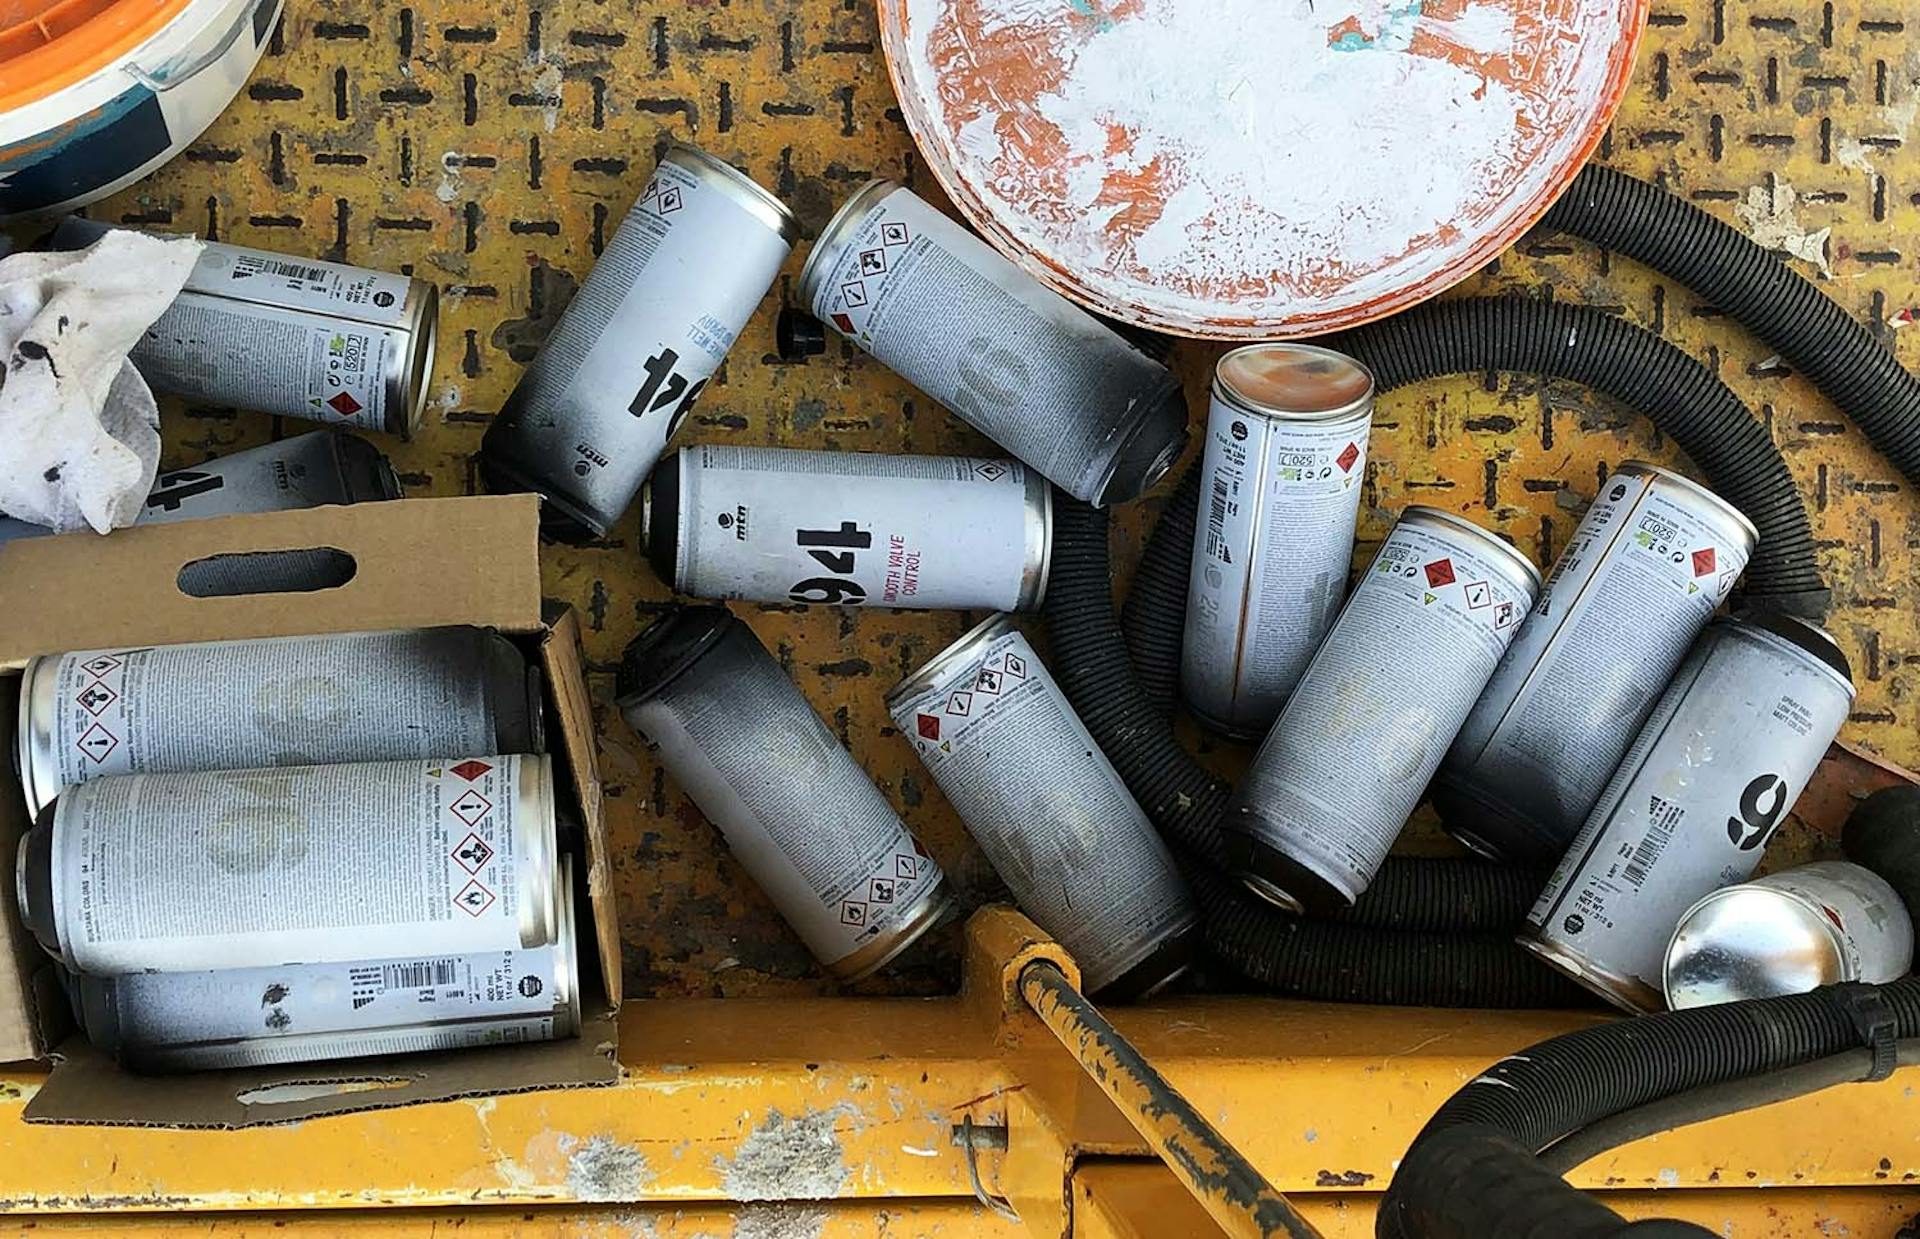 Des bombes de peintures vides entreposées sur une nacelle télescopique lors d'un chantier fresque.